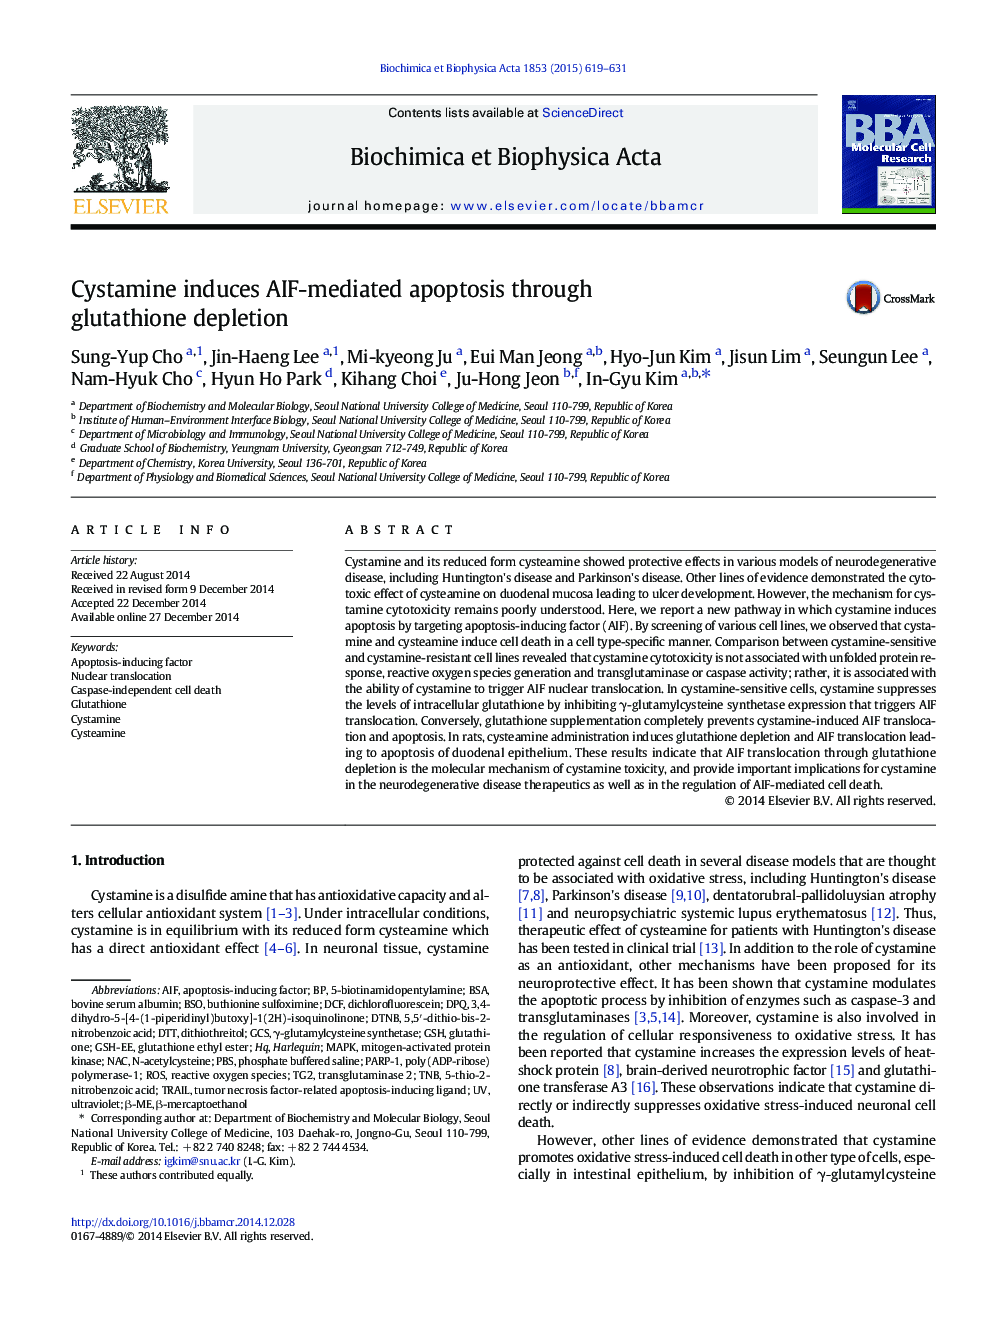 Cystamine induces AIF-mediated apoptosis through glutathione depletion